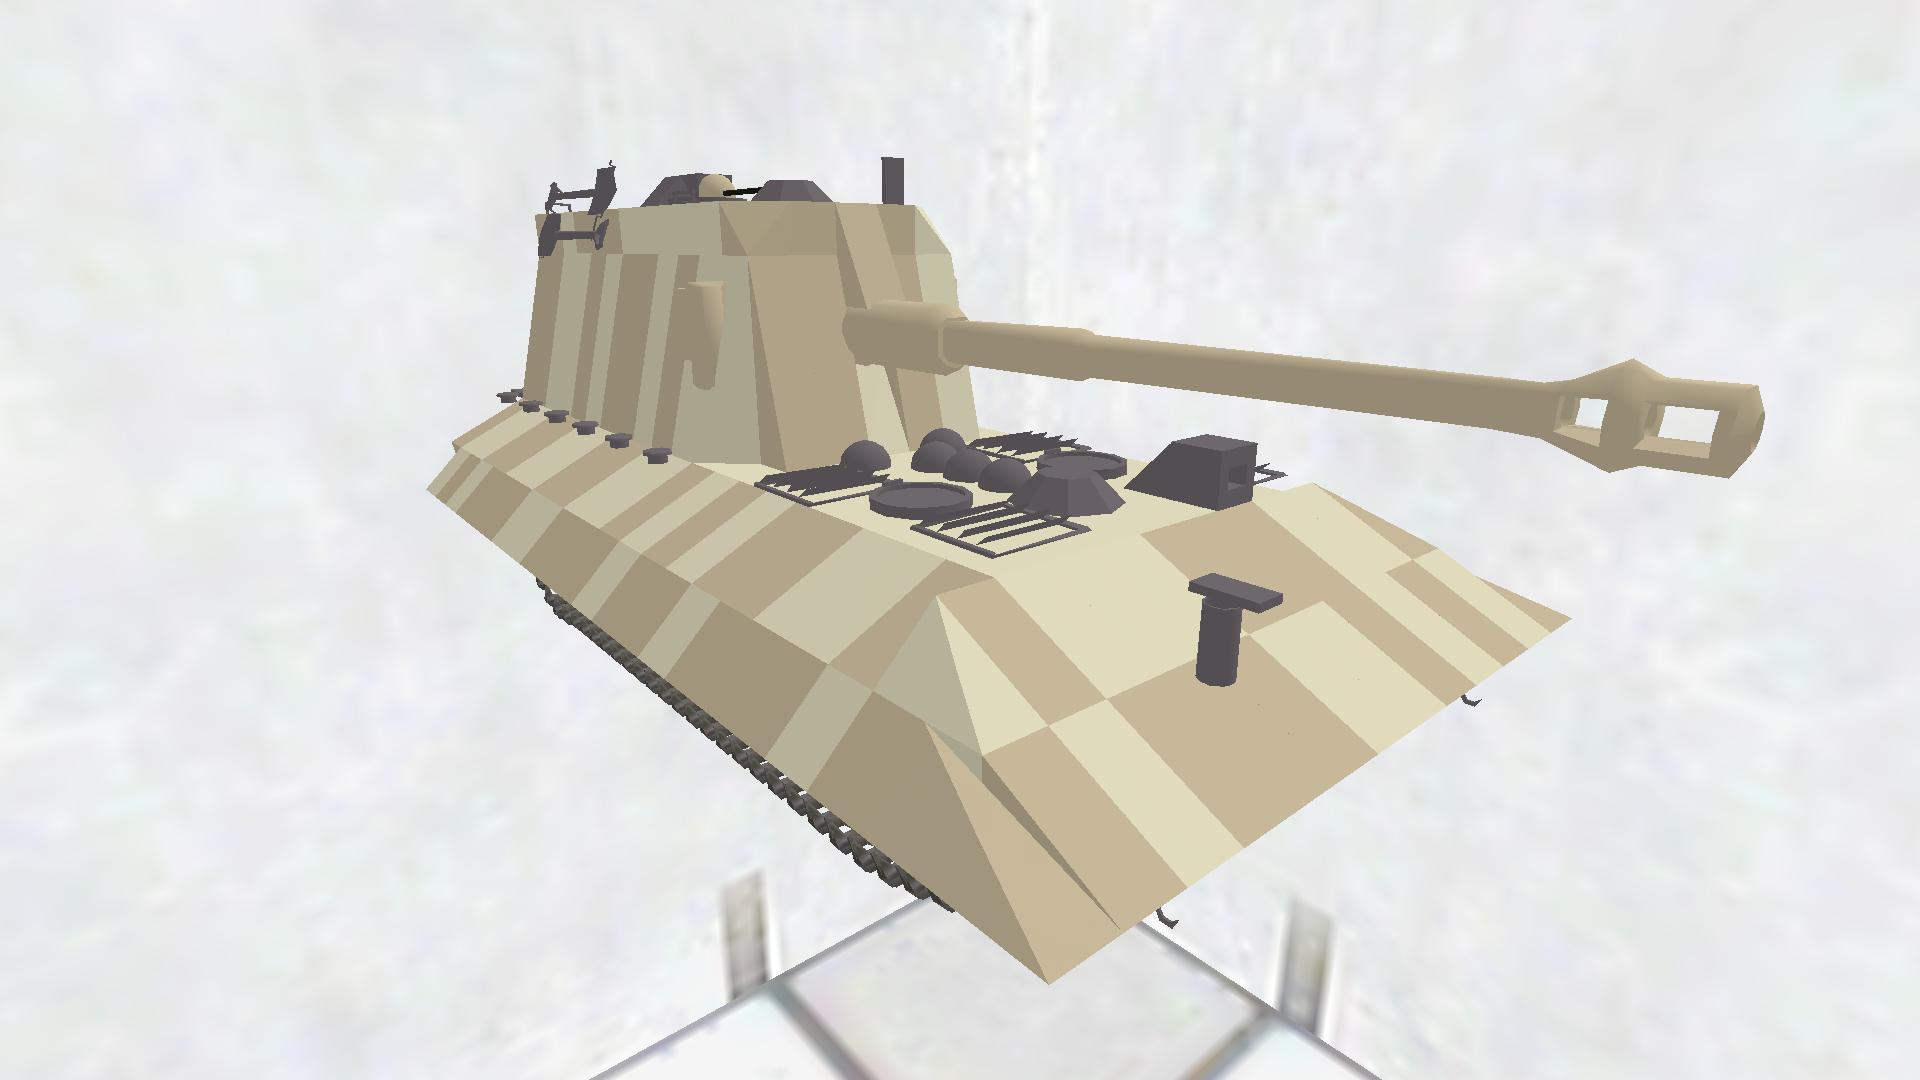 Jadpanzer E 100